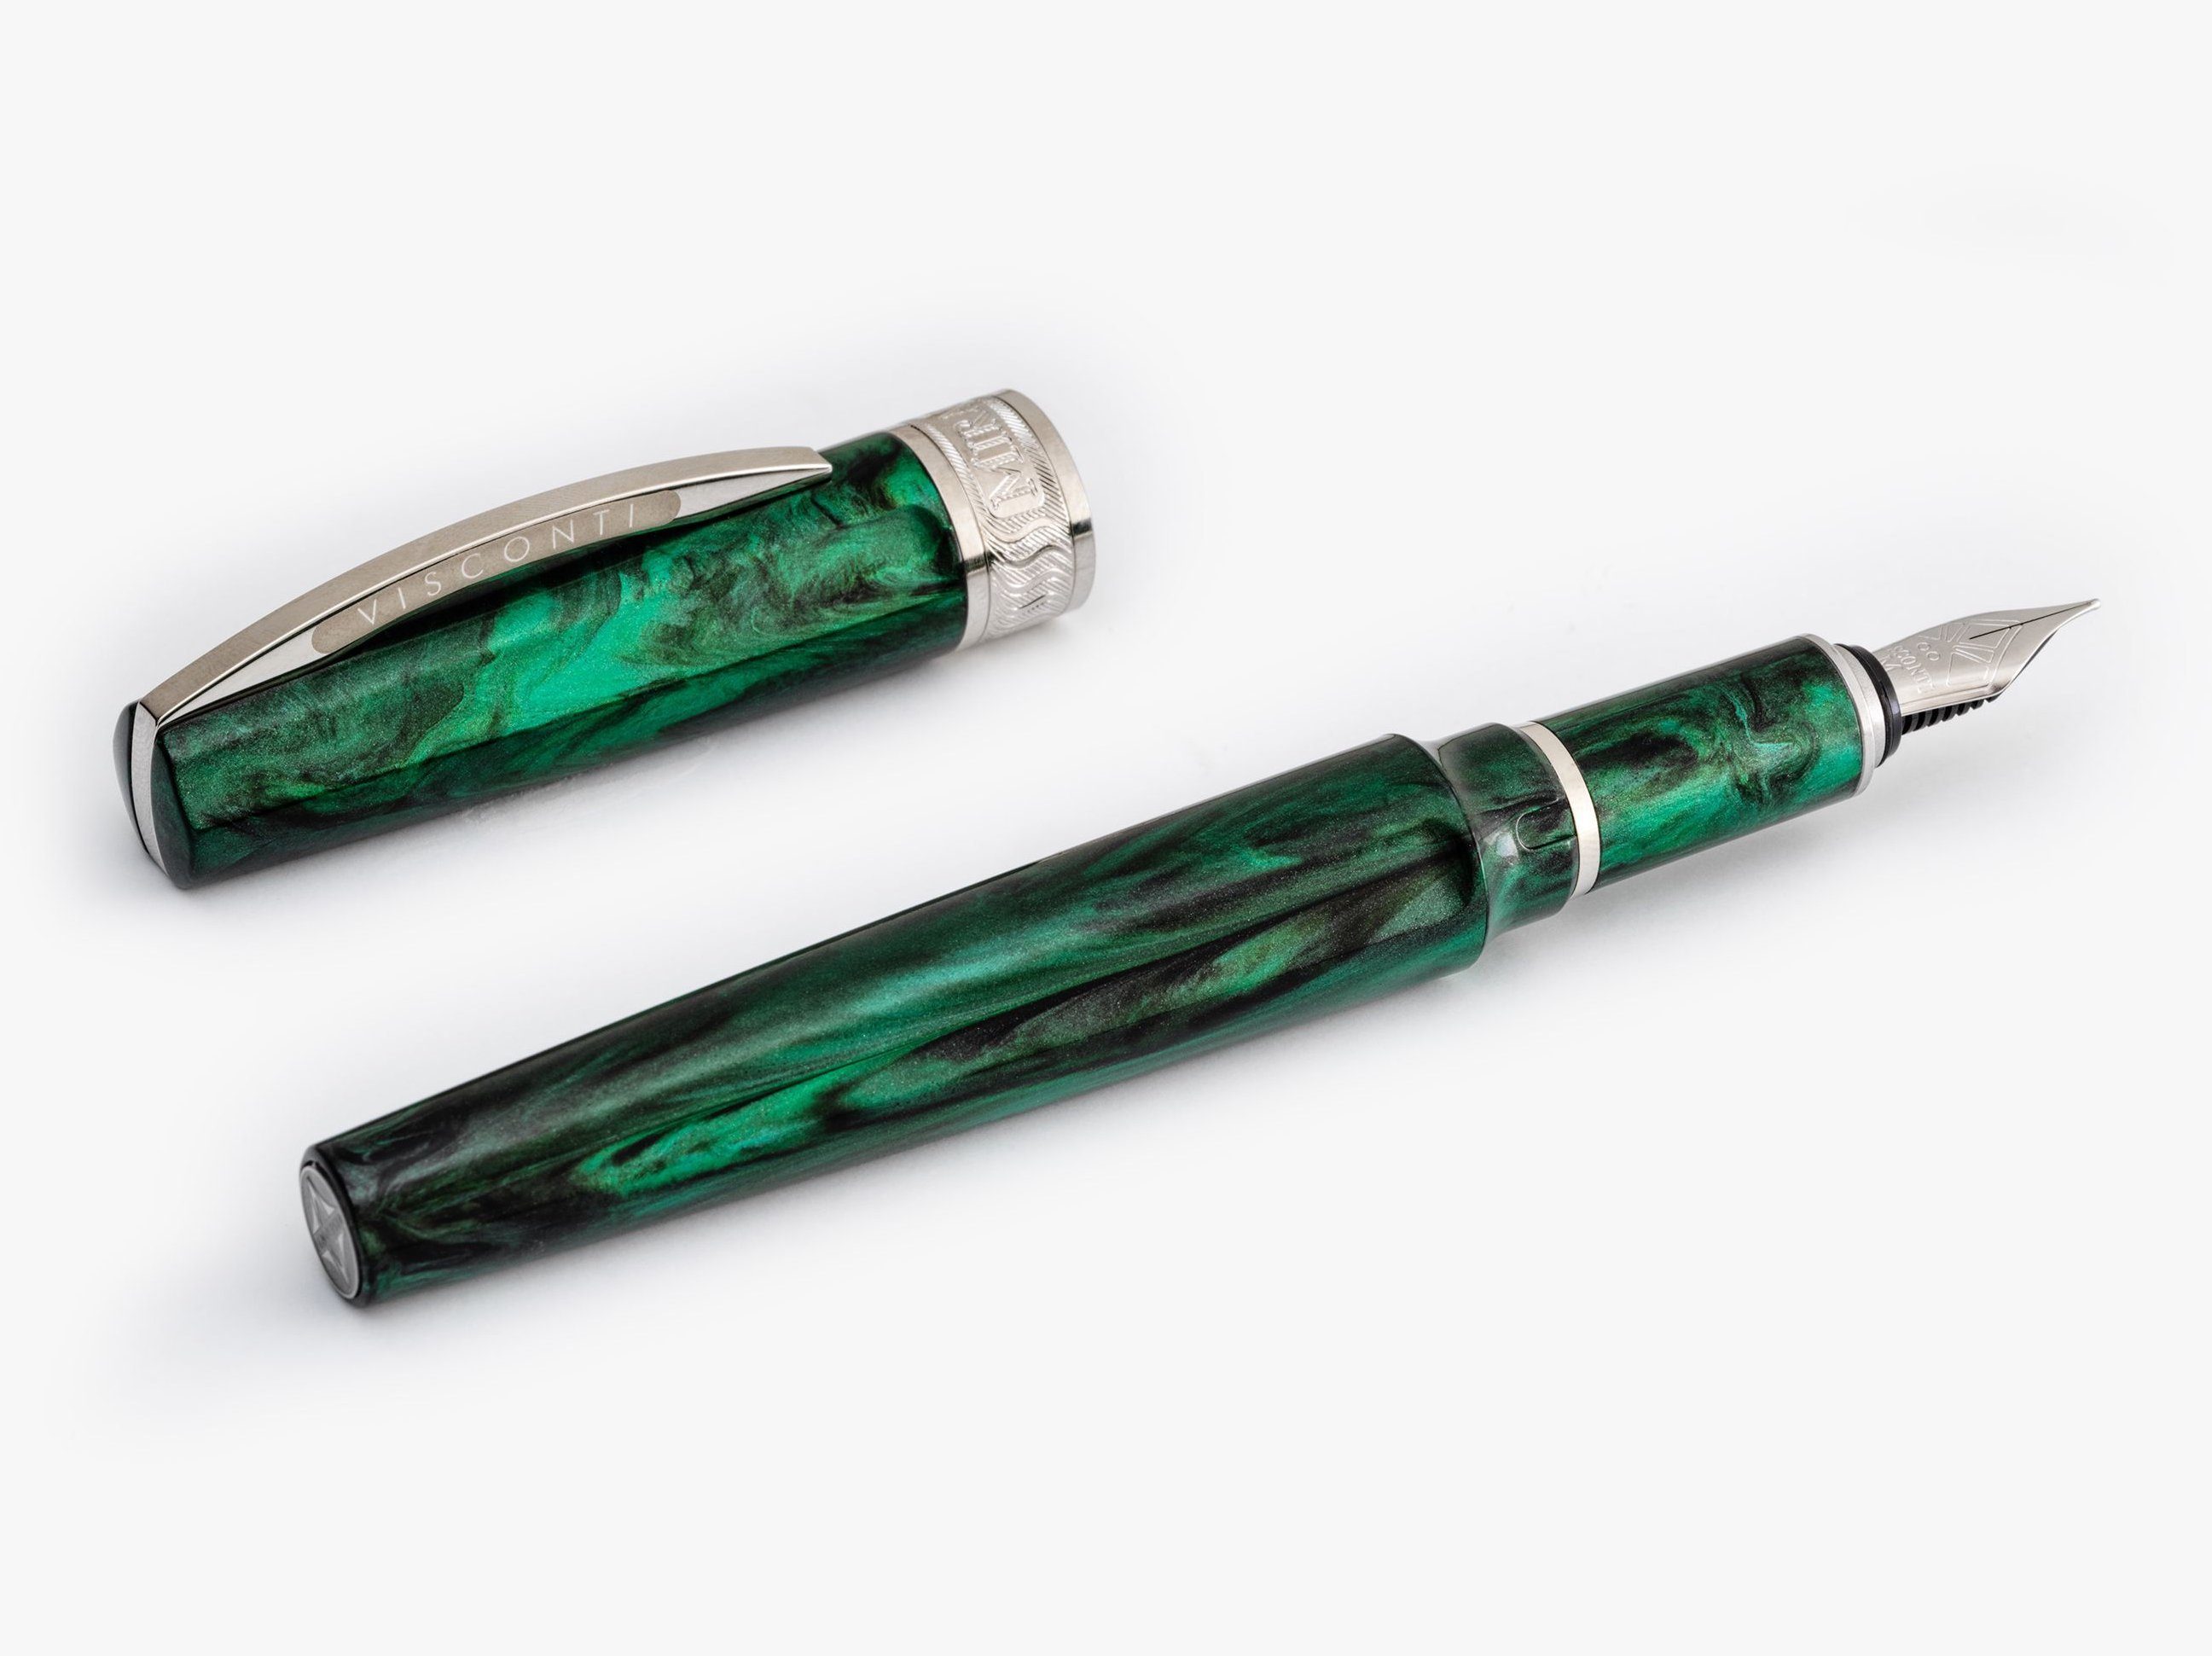 Visconti Füllfederhalter Visconti Mirage Füllfederhalter Emerald Fountain Pen verschiedene, (kein Set) Emerald EF